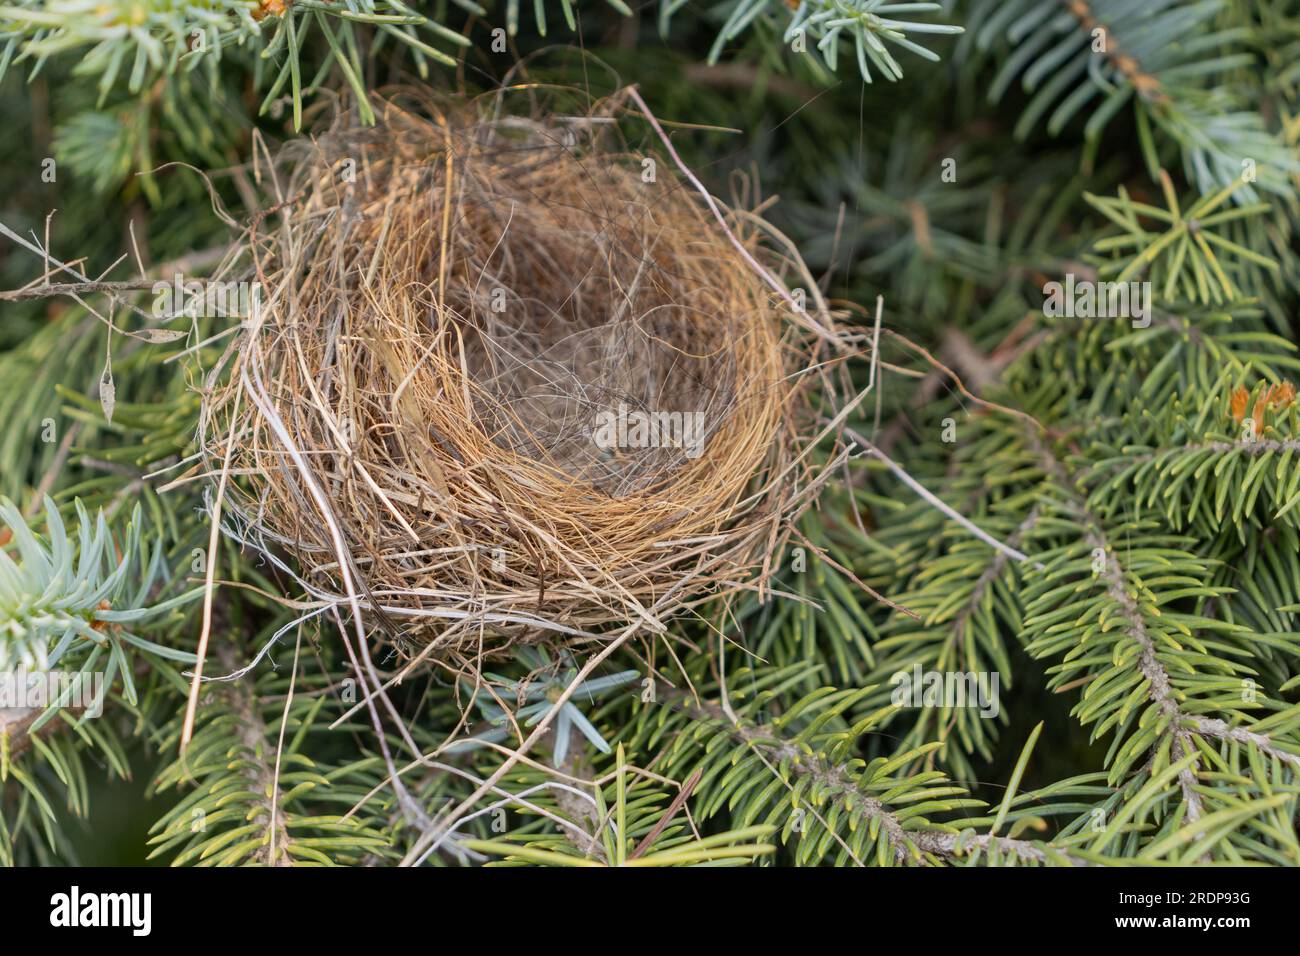 Nido di uccelli vuoto nell'albero di conifere - vista ravvicinata di ramoscelli e erba secchi - niente uova o piccoli uccelli - aghi verdi sullo sfondo - prelevati dall'alto Foto Stock